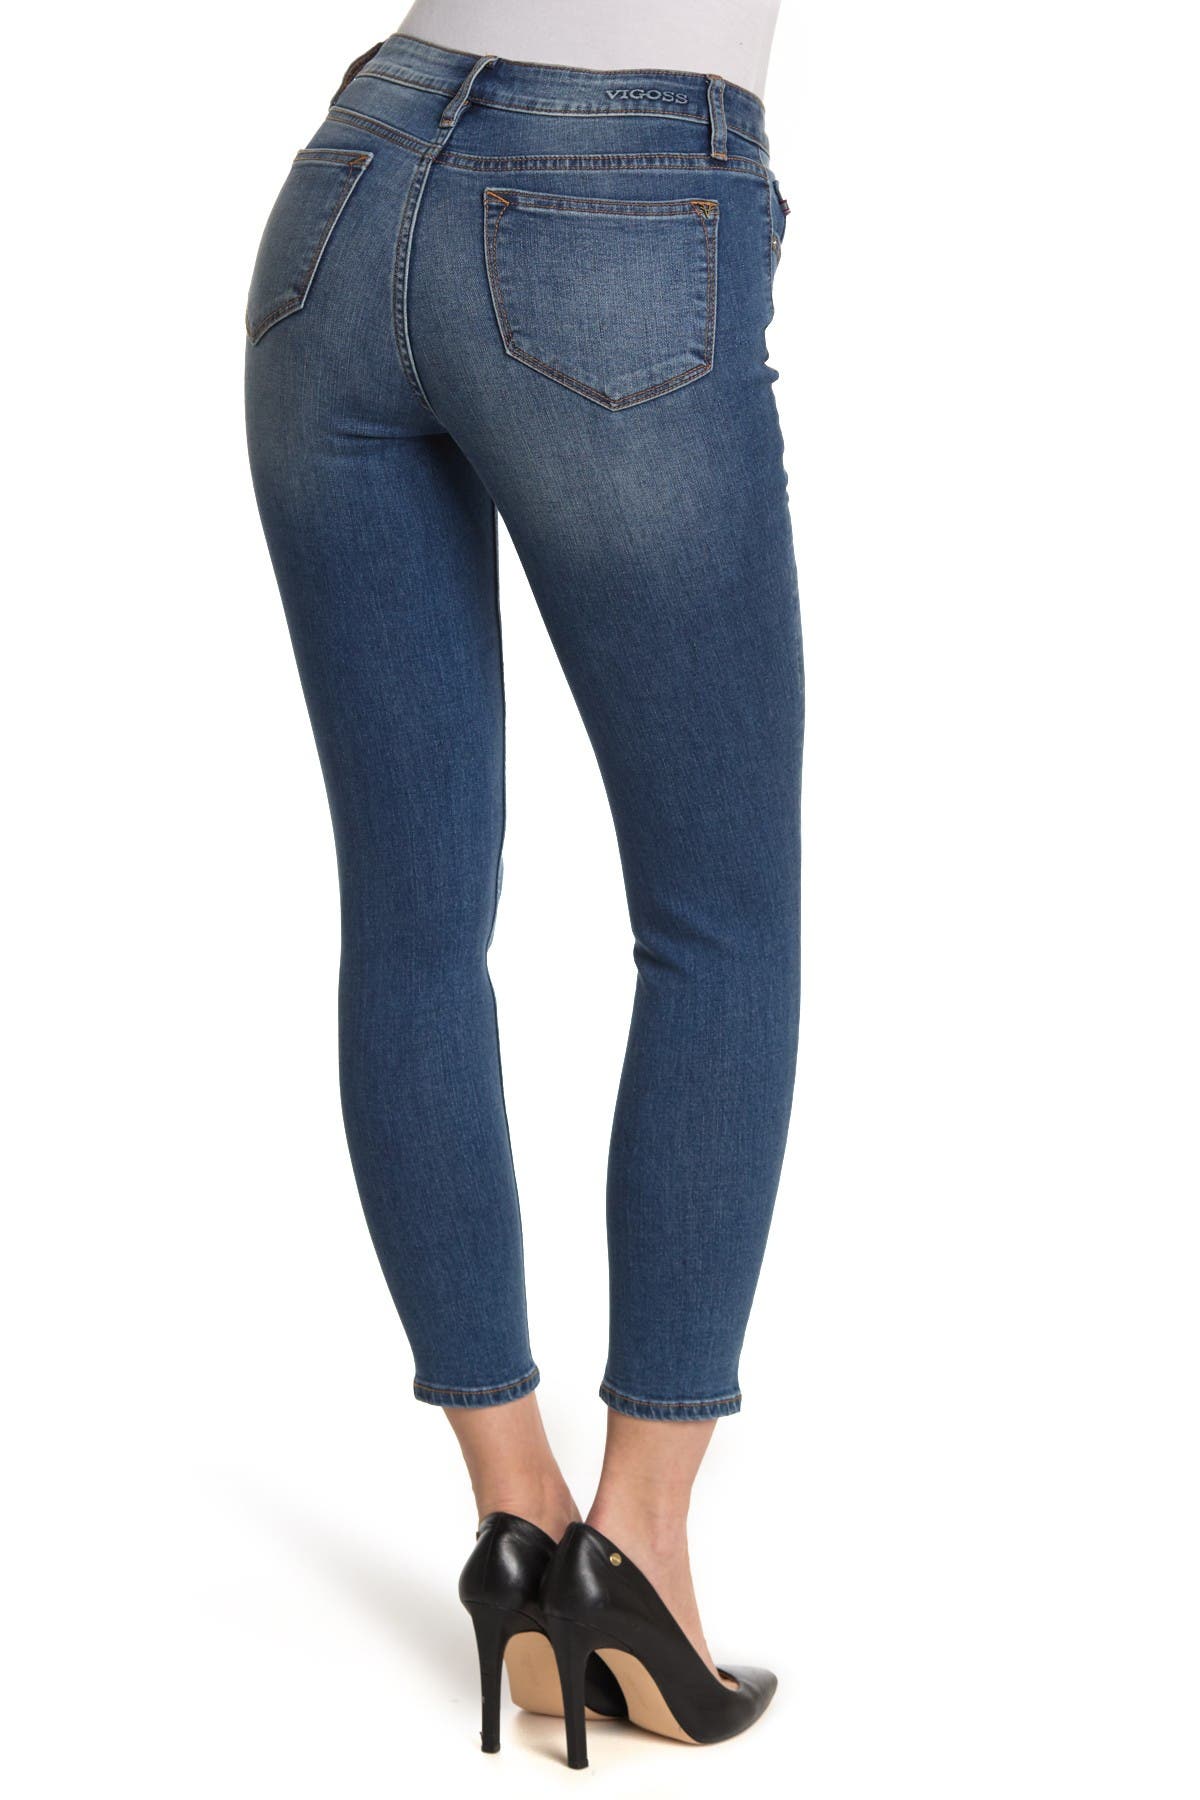 vigoss marisa skinny jeans